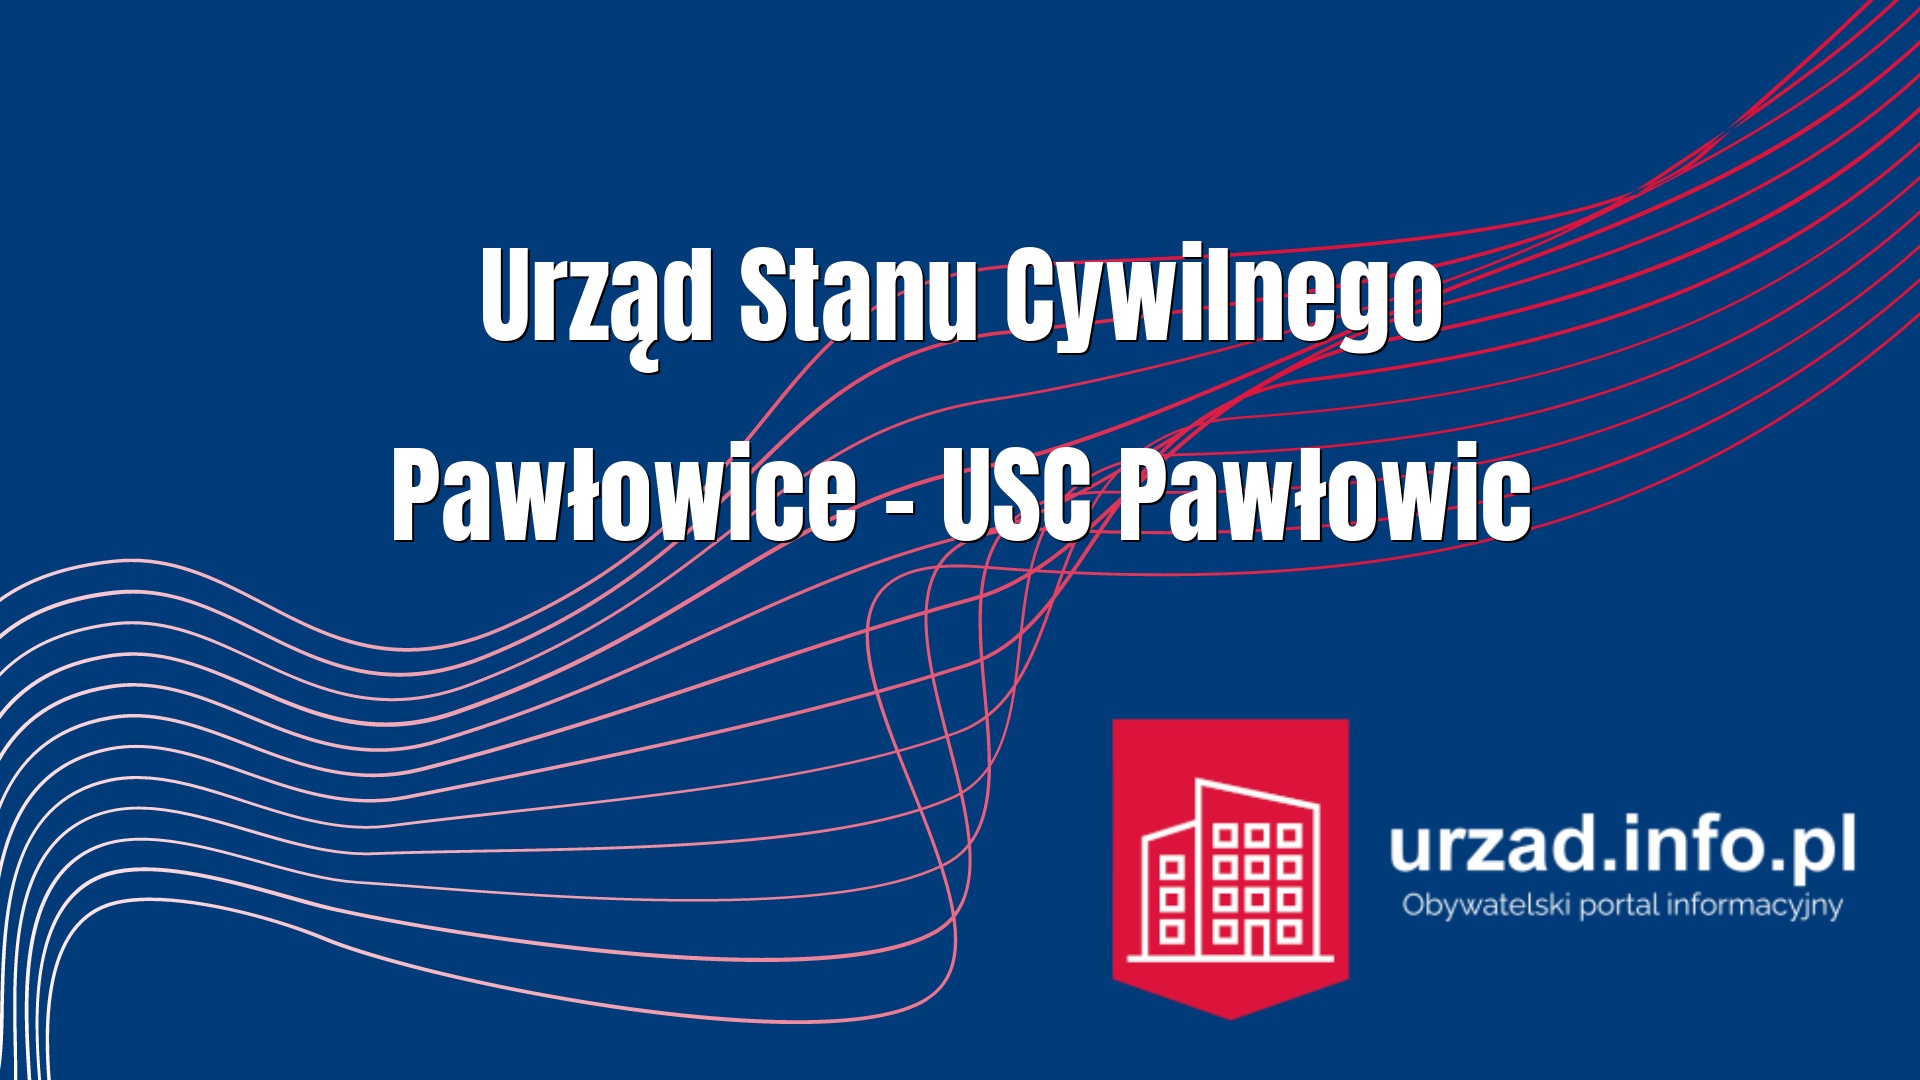 Urząd Stanu Cywilnego Pawłowice – USC Pawłowic